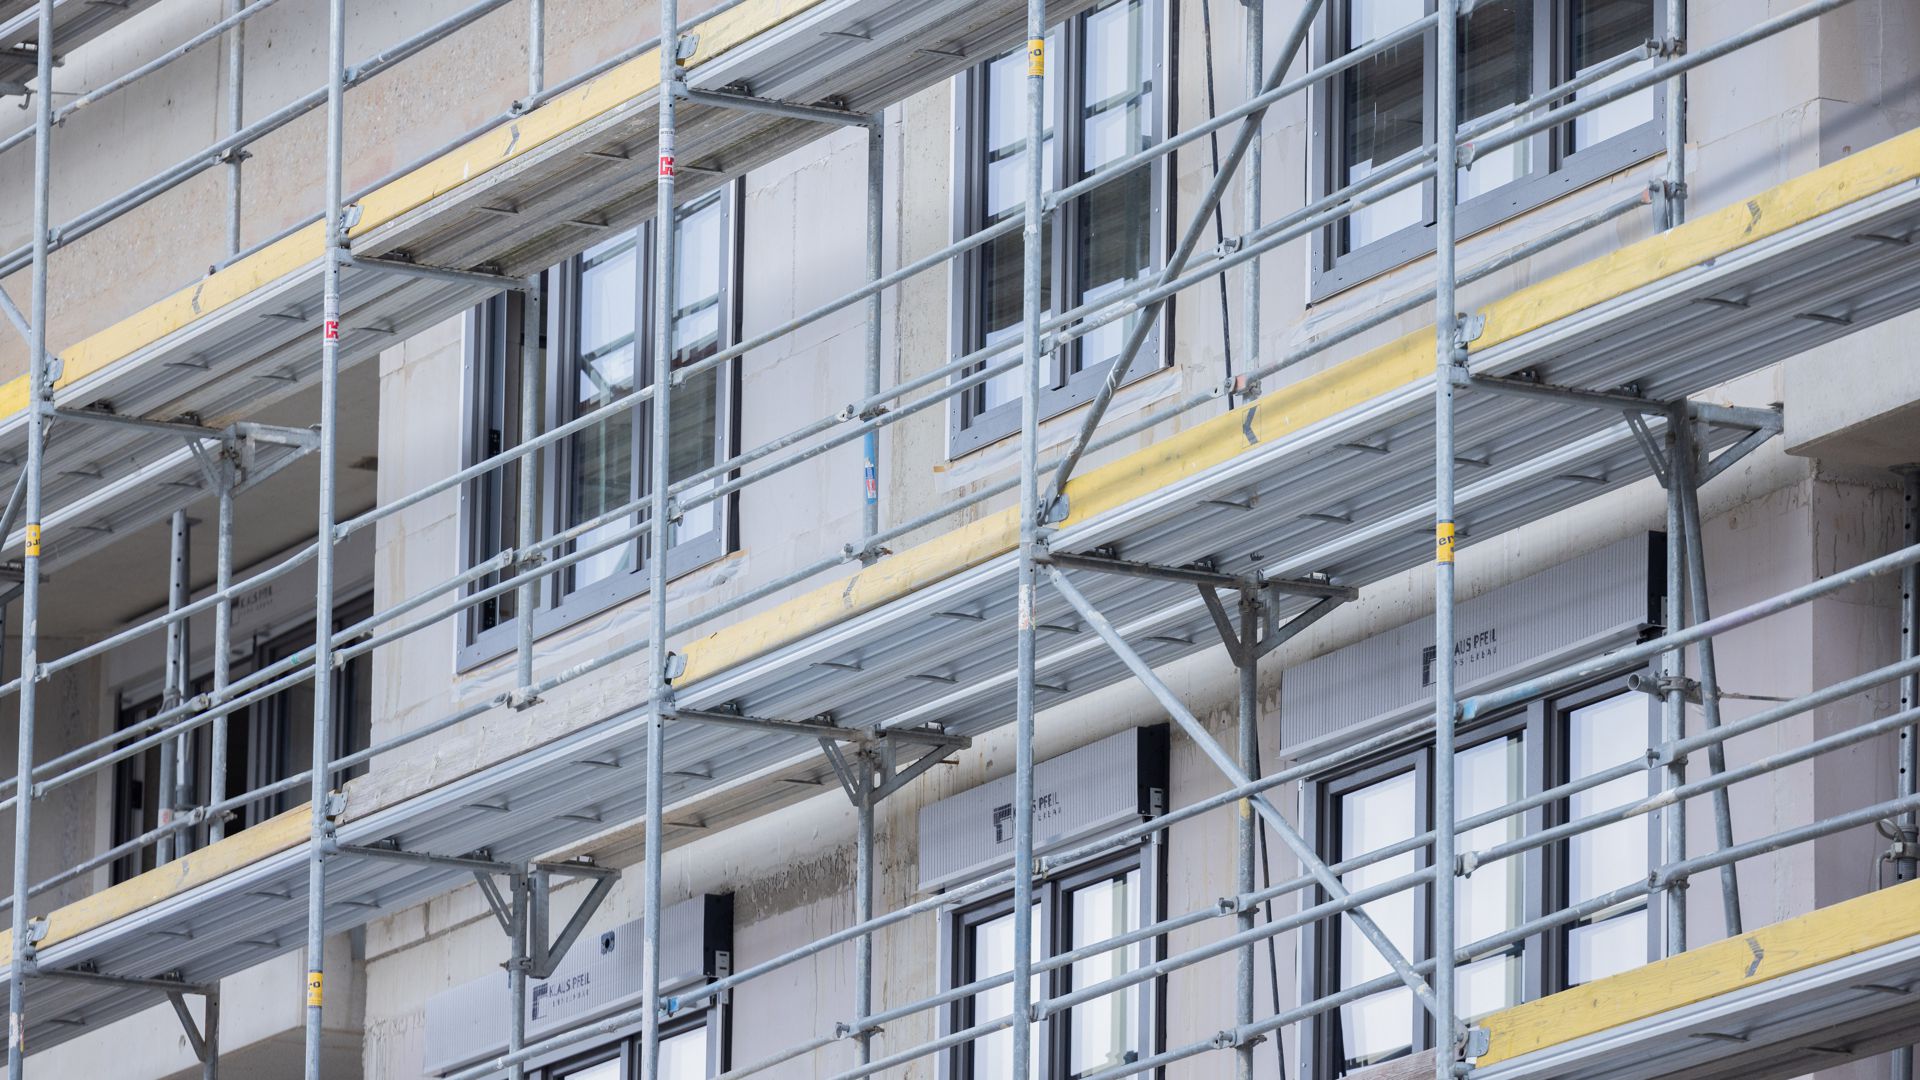 Fenster werden in einen Rohbau eines Mehrfamilienhauses mit Mietwohnungen im Stadtteil Ehrenfeld eingebaut. Statt 400.000 neuen Wohnungen pro Jahr, wie von der Regierung versprochen, entstehen nur knapp die Hälfte.